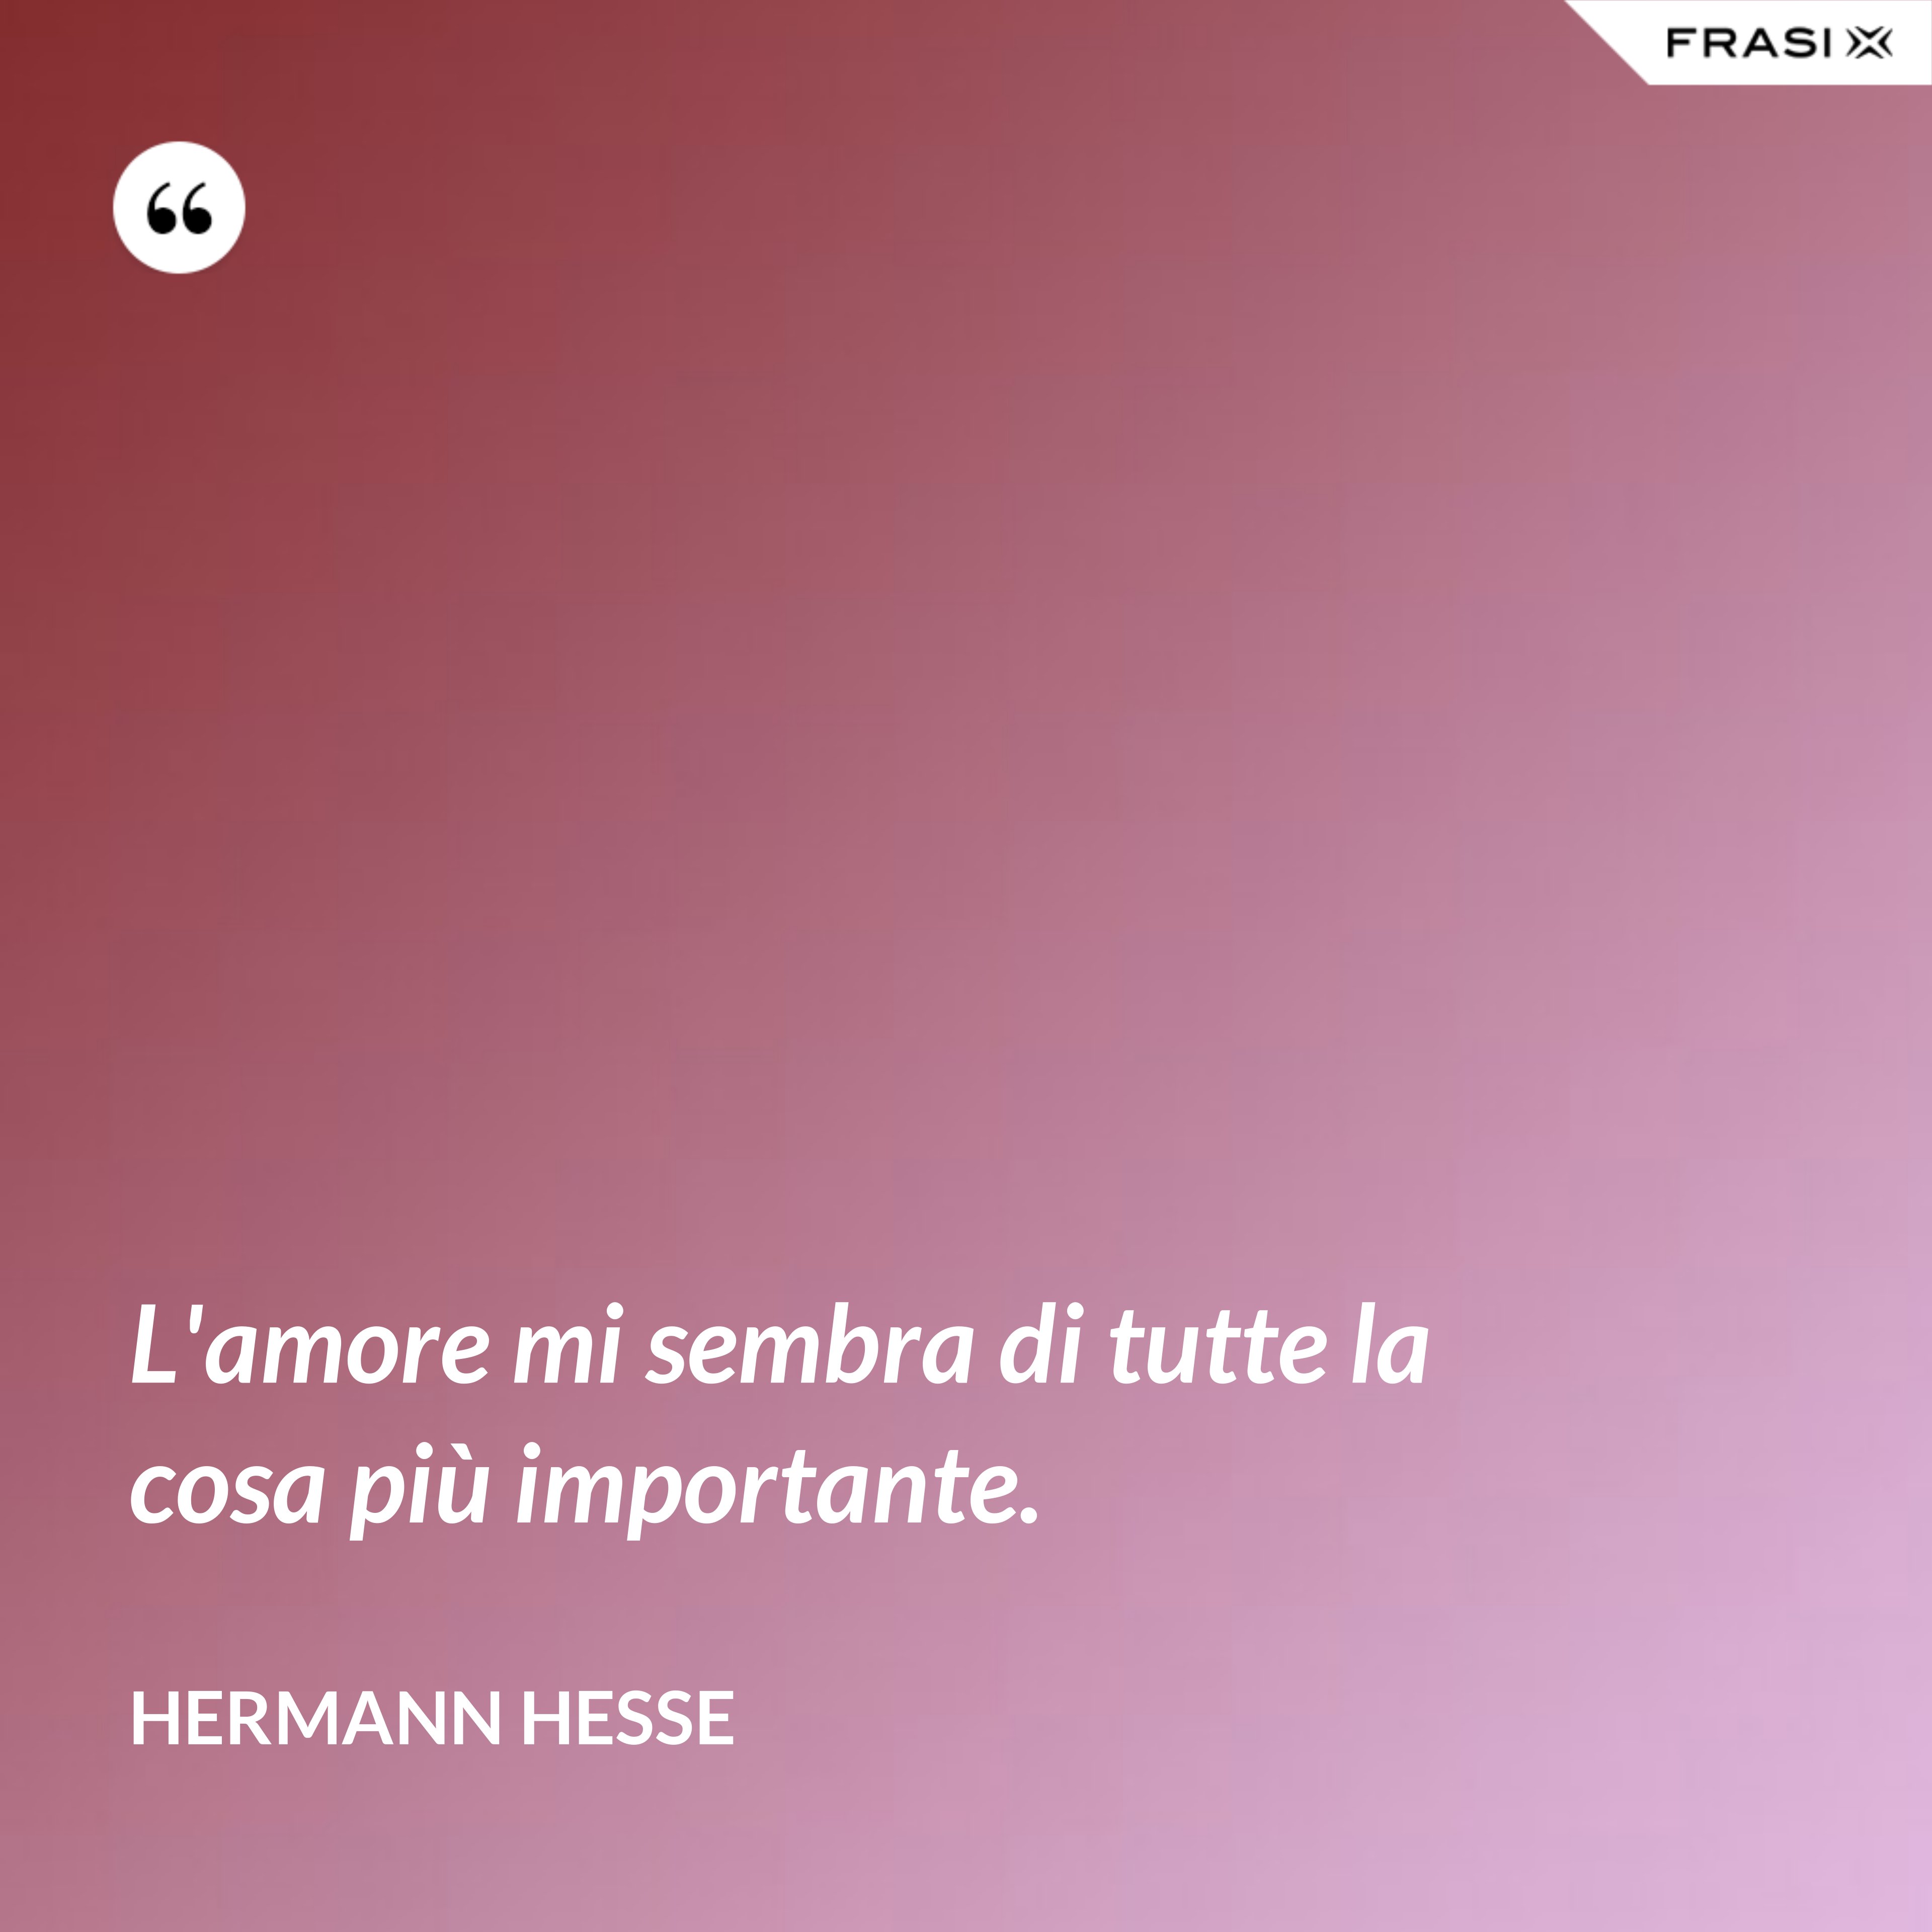 L'amore mi sembra di tutte la cosa più importante. - Hermann Hesse